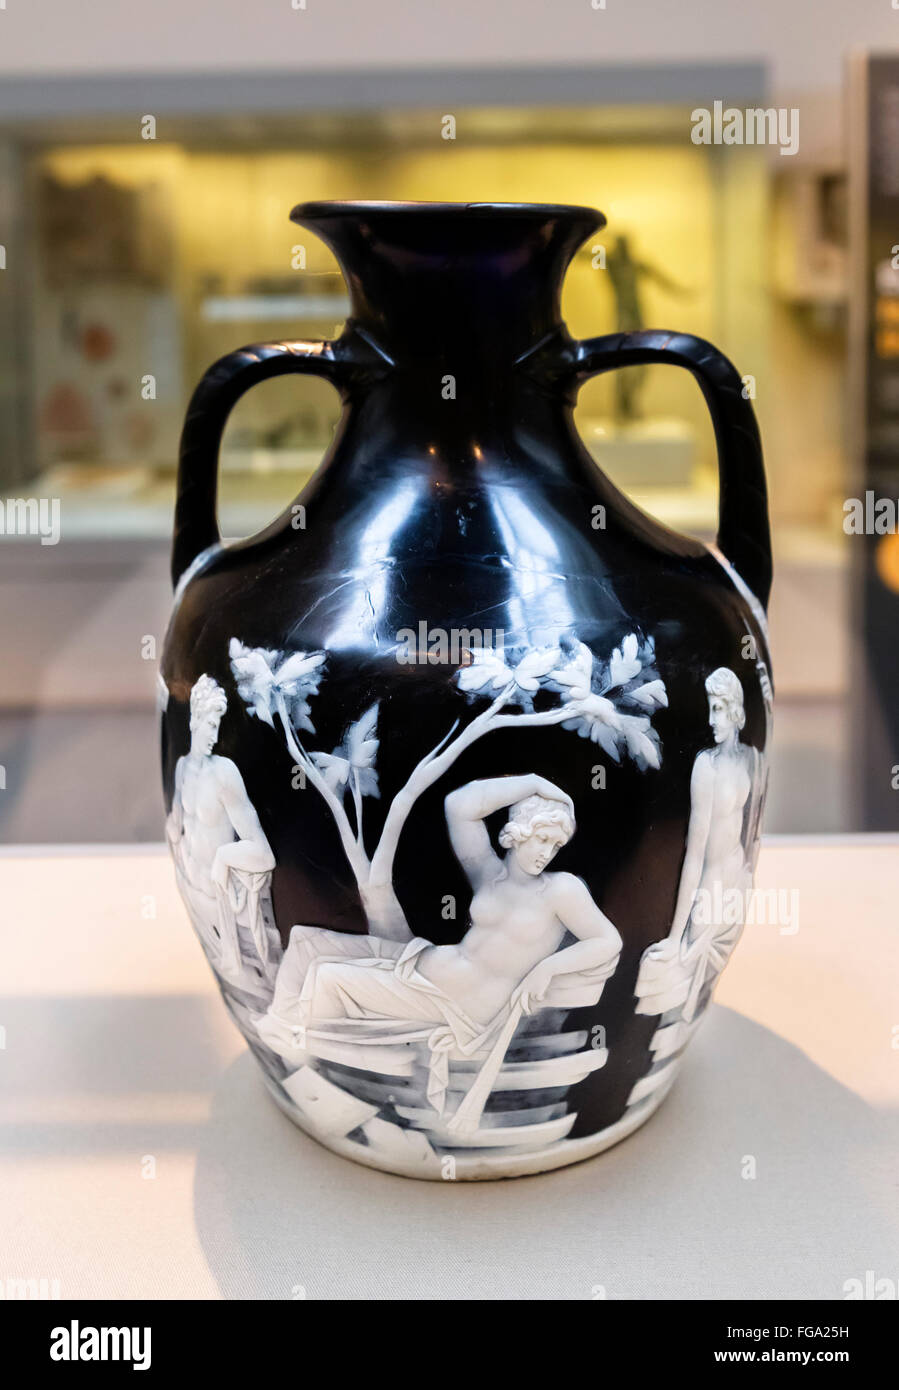 Le Vase de Portland, un vase en verre camée Romain entre 15 BC et AD 25, Wolfson Gallery, British Museum, Londres, Angleterre, Royaume-Uni Banque D'Images